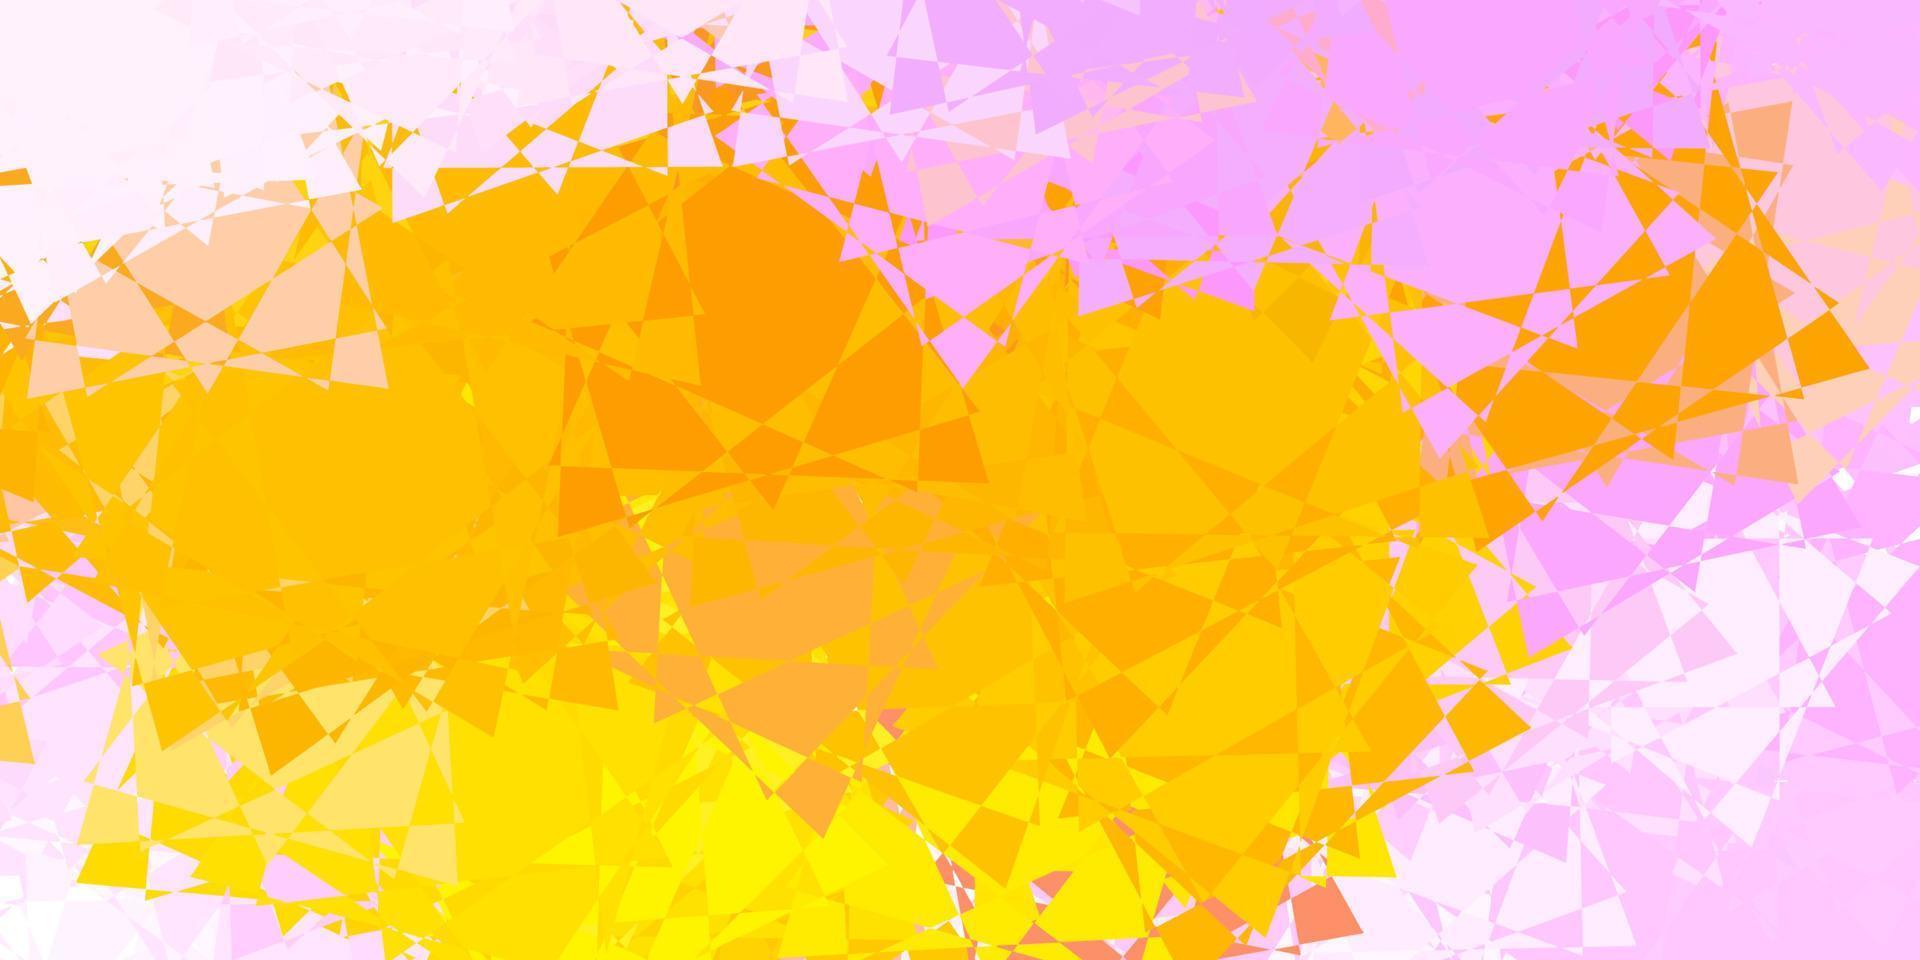 sfondo vettoriale rosa chiaro, giallo con triangoli.